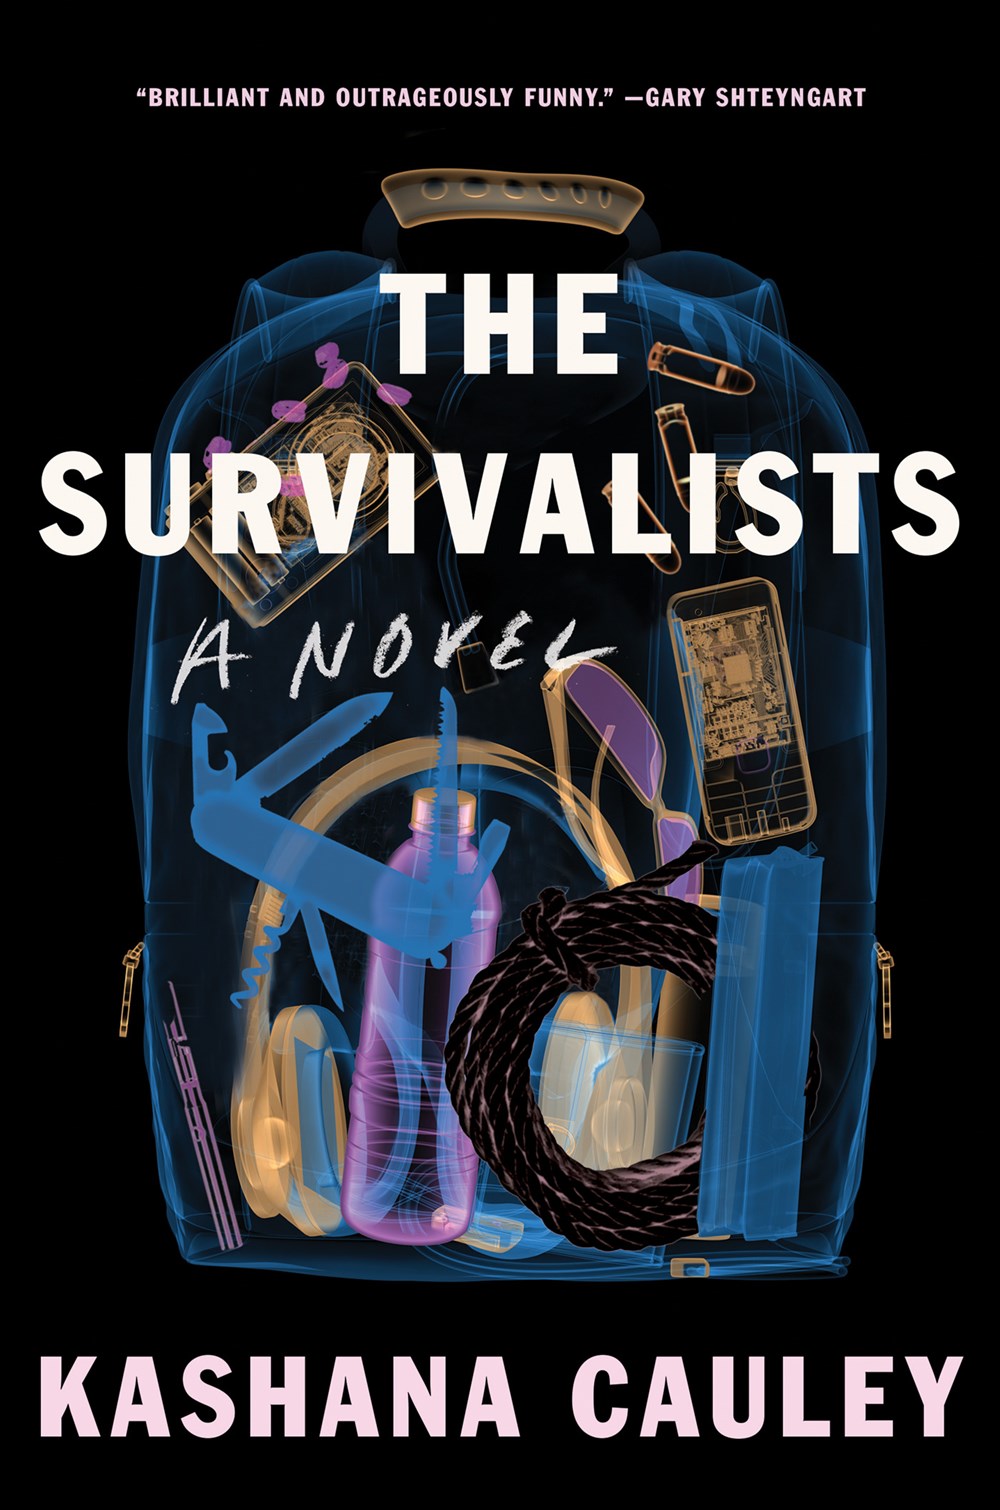 The Survivalists: A Novel by Kashana Cauley